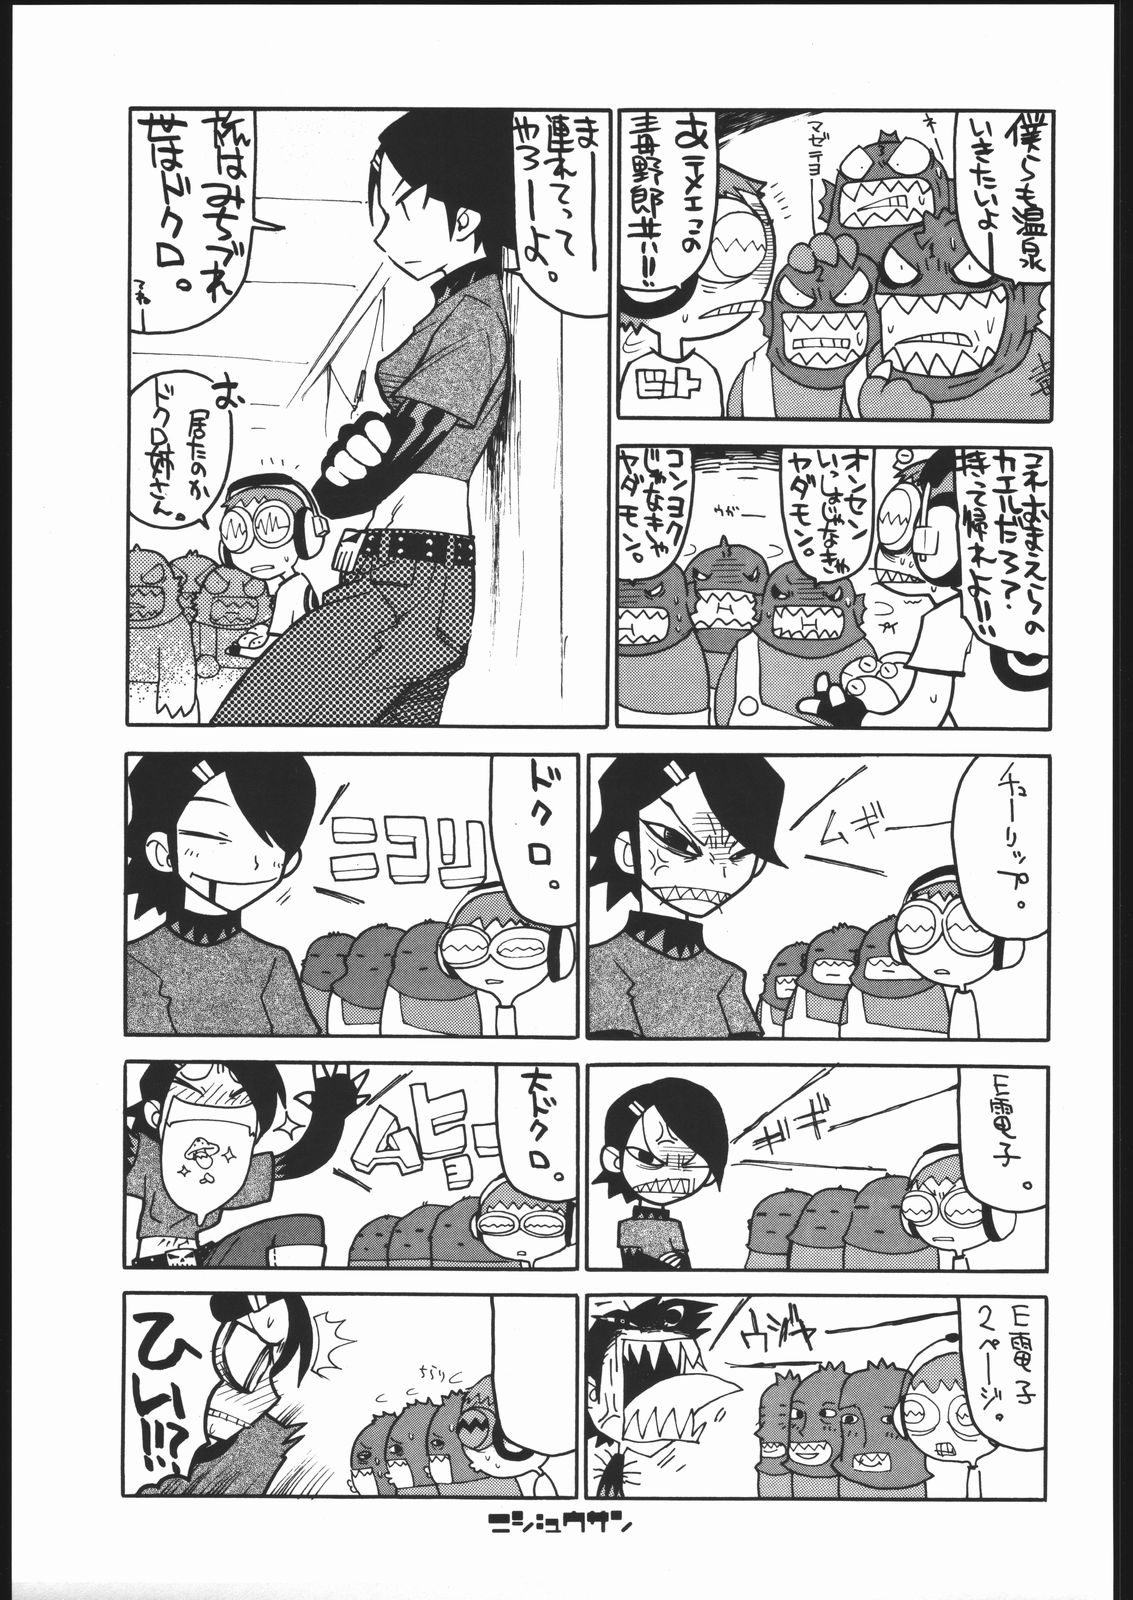 [Jet Set Radio] Radical Gadget (Bakushiishi) page 22 full